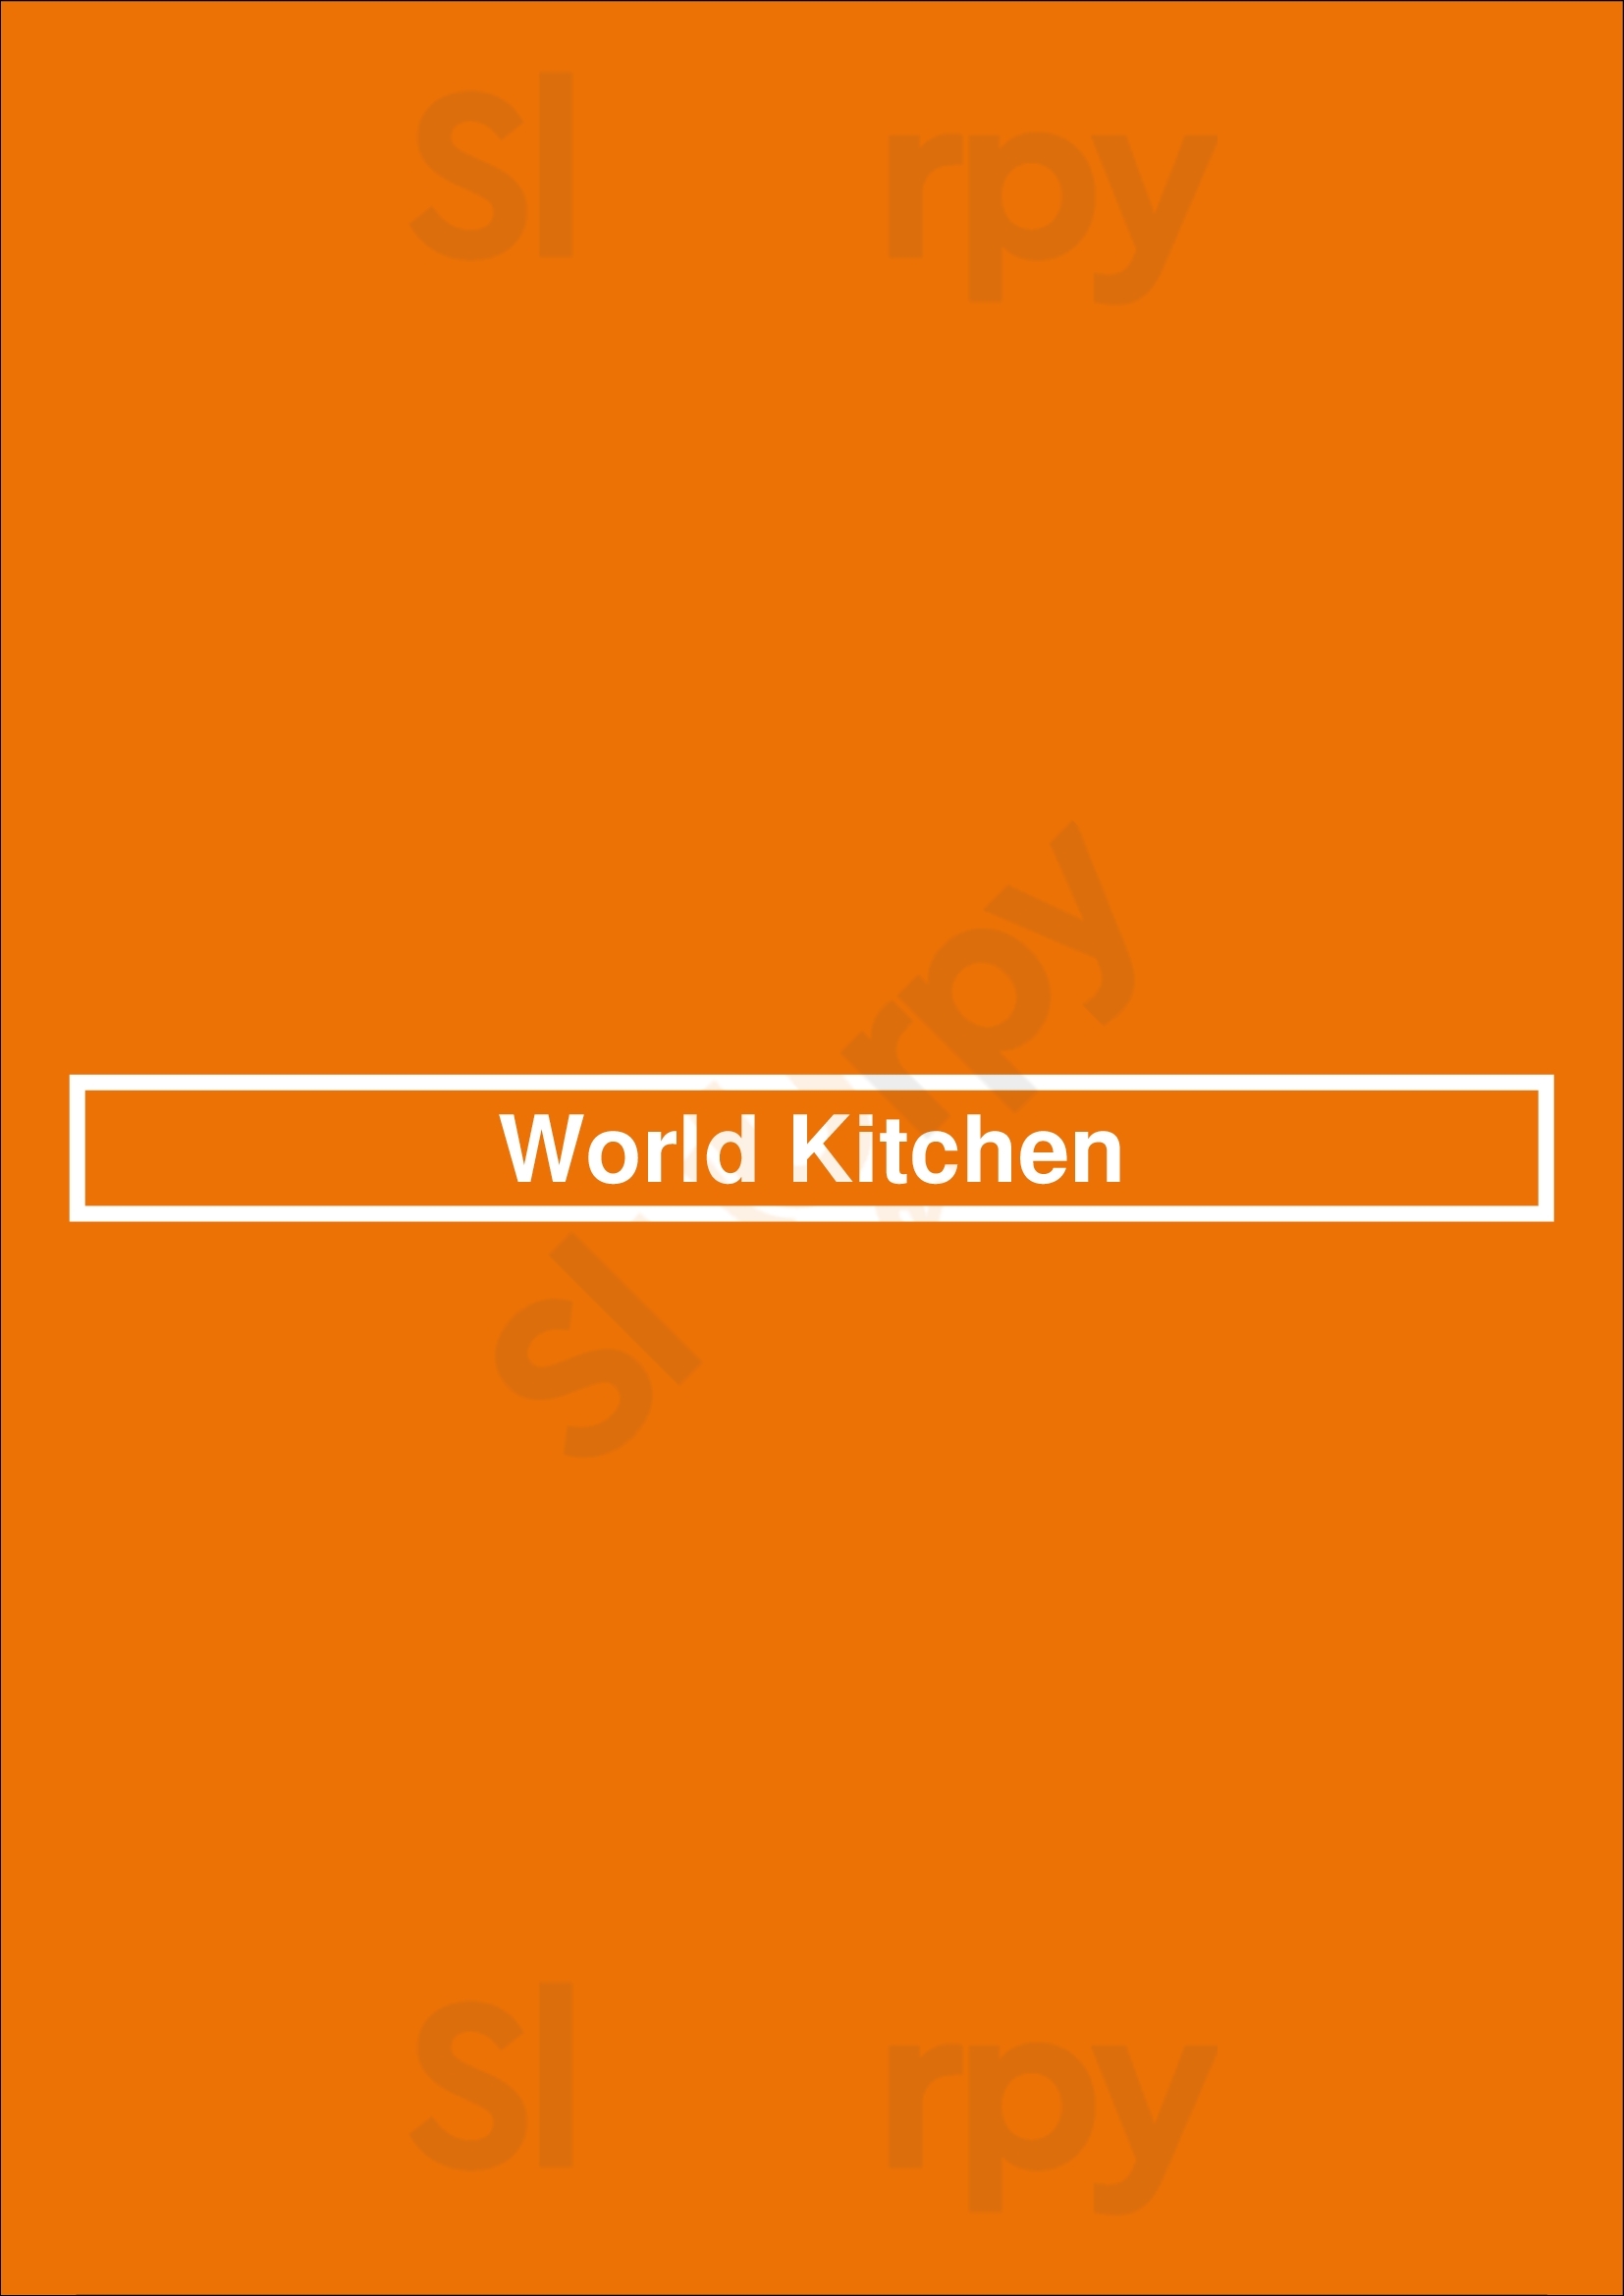 World Kitchen Porto Menu - 1